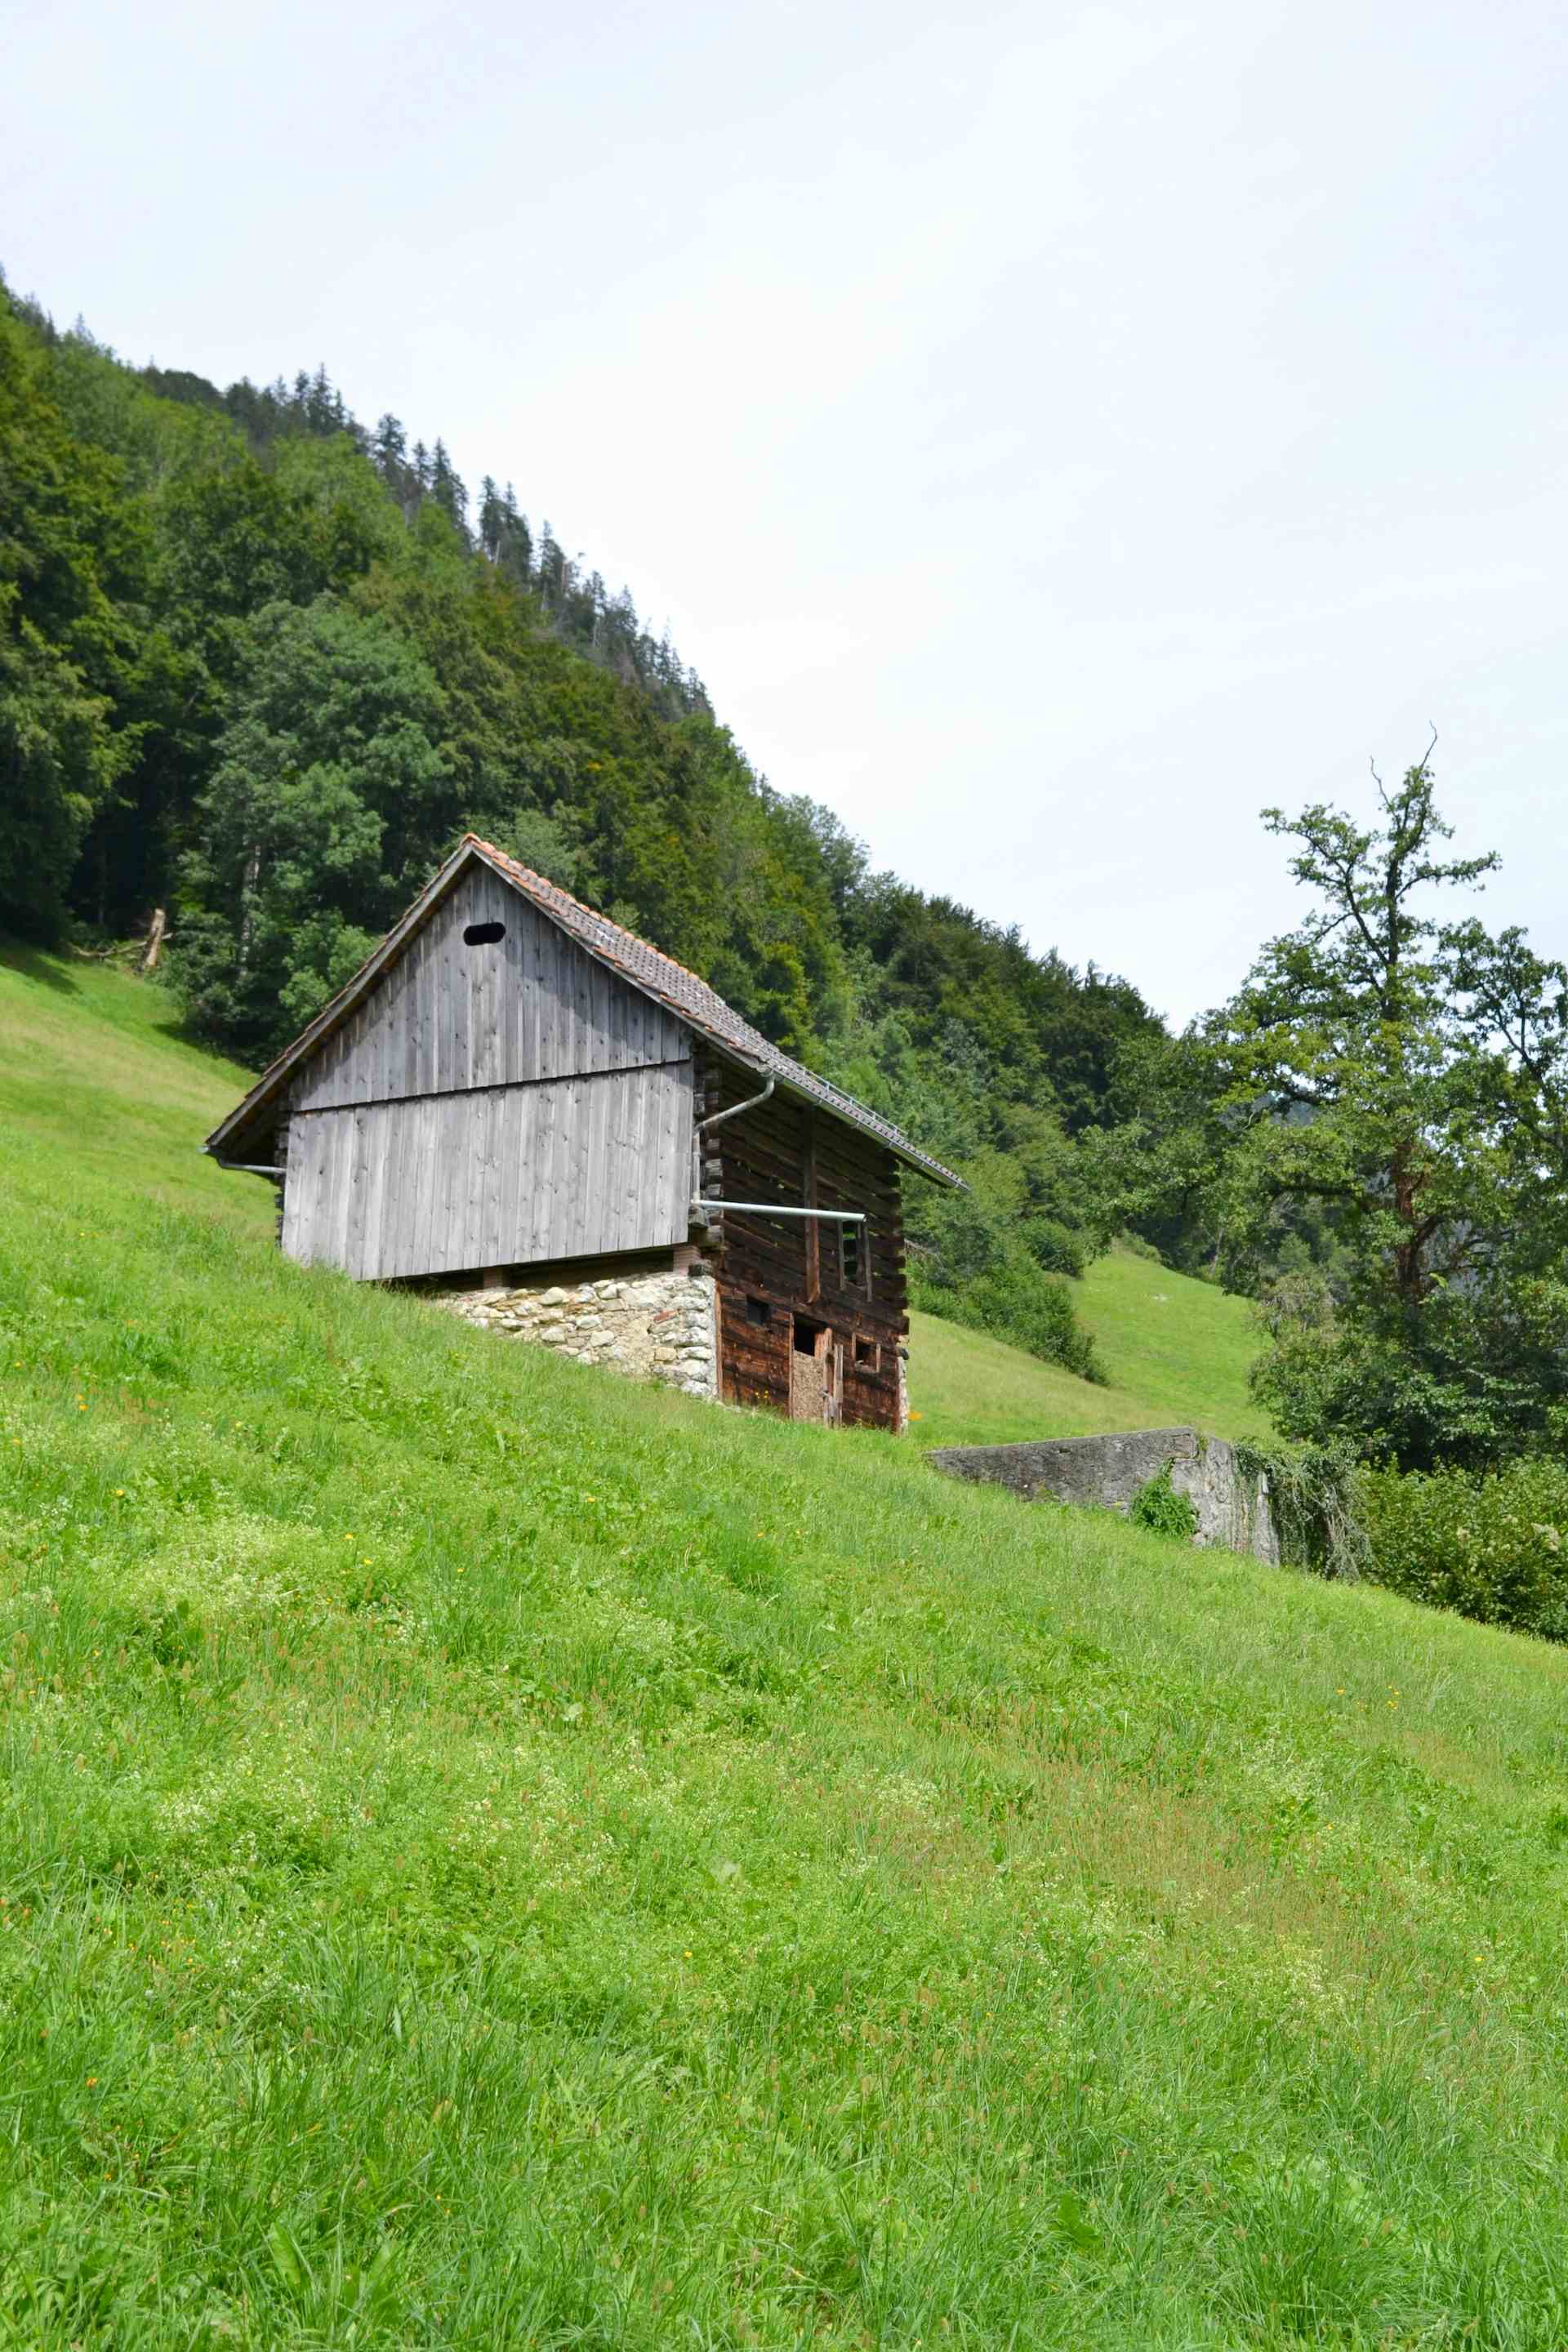 Weinbau Ottiger, producer in Kastanienbaum canton of Lucerne in Switzerland, | Mimelis